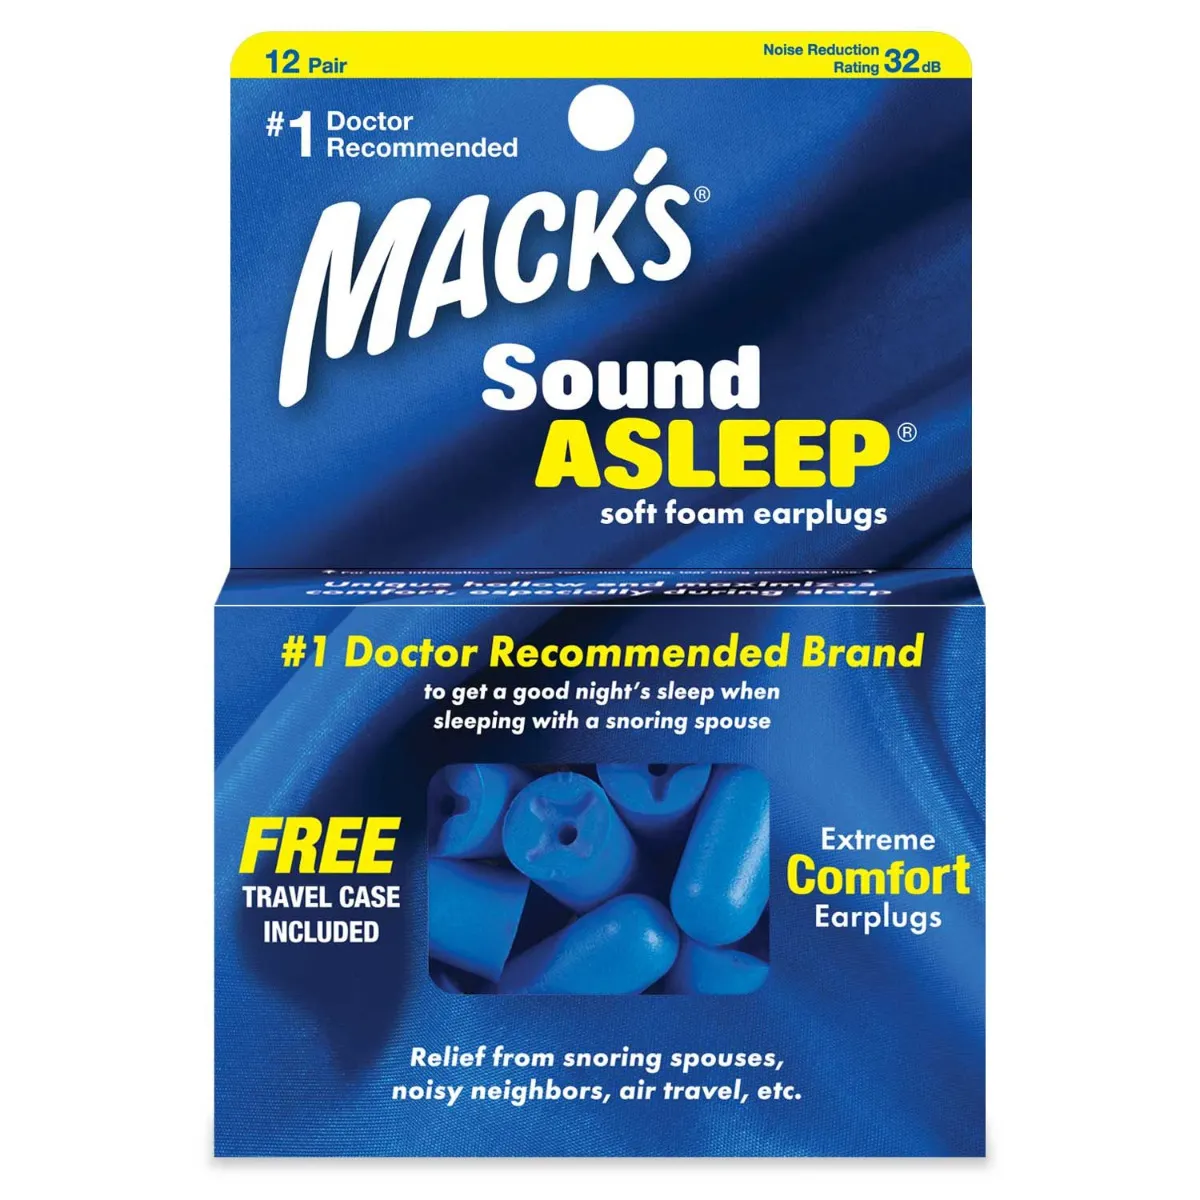 MACKS Sound Asleep